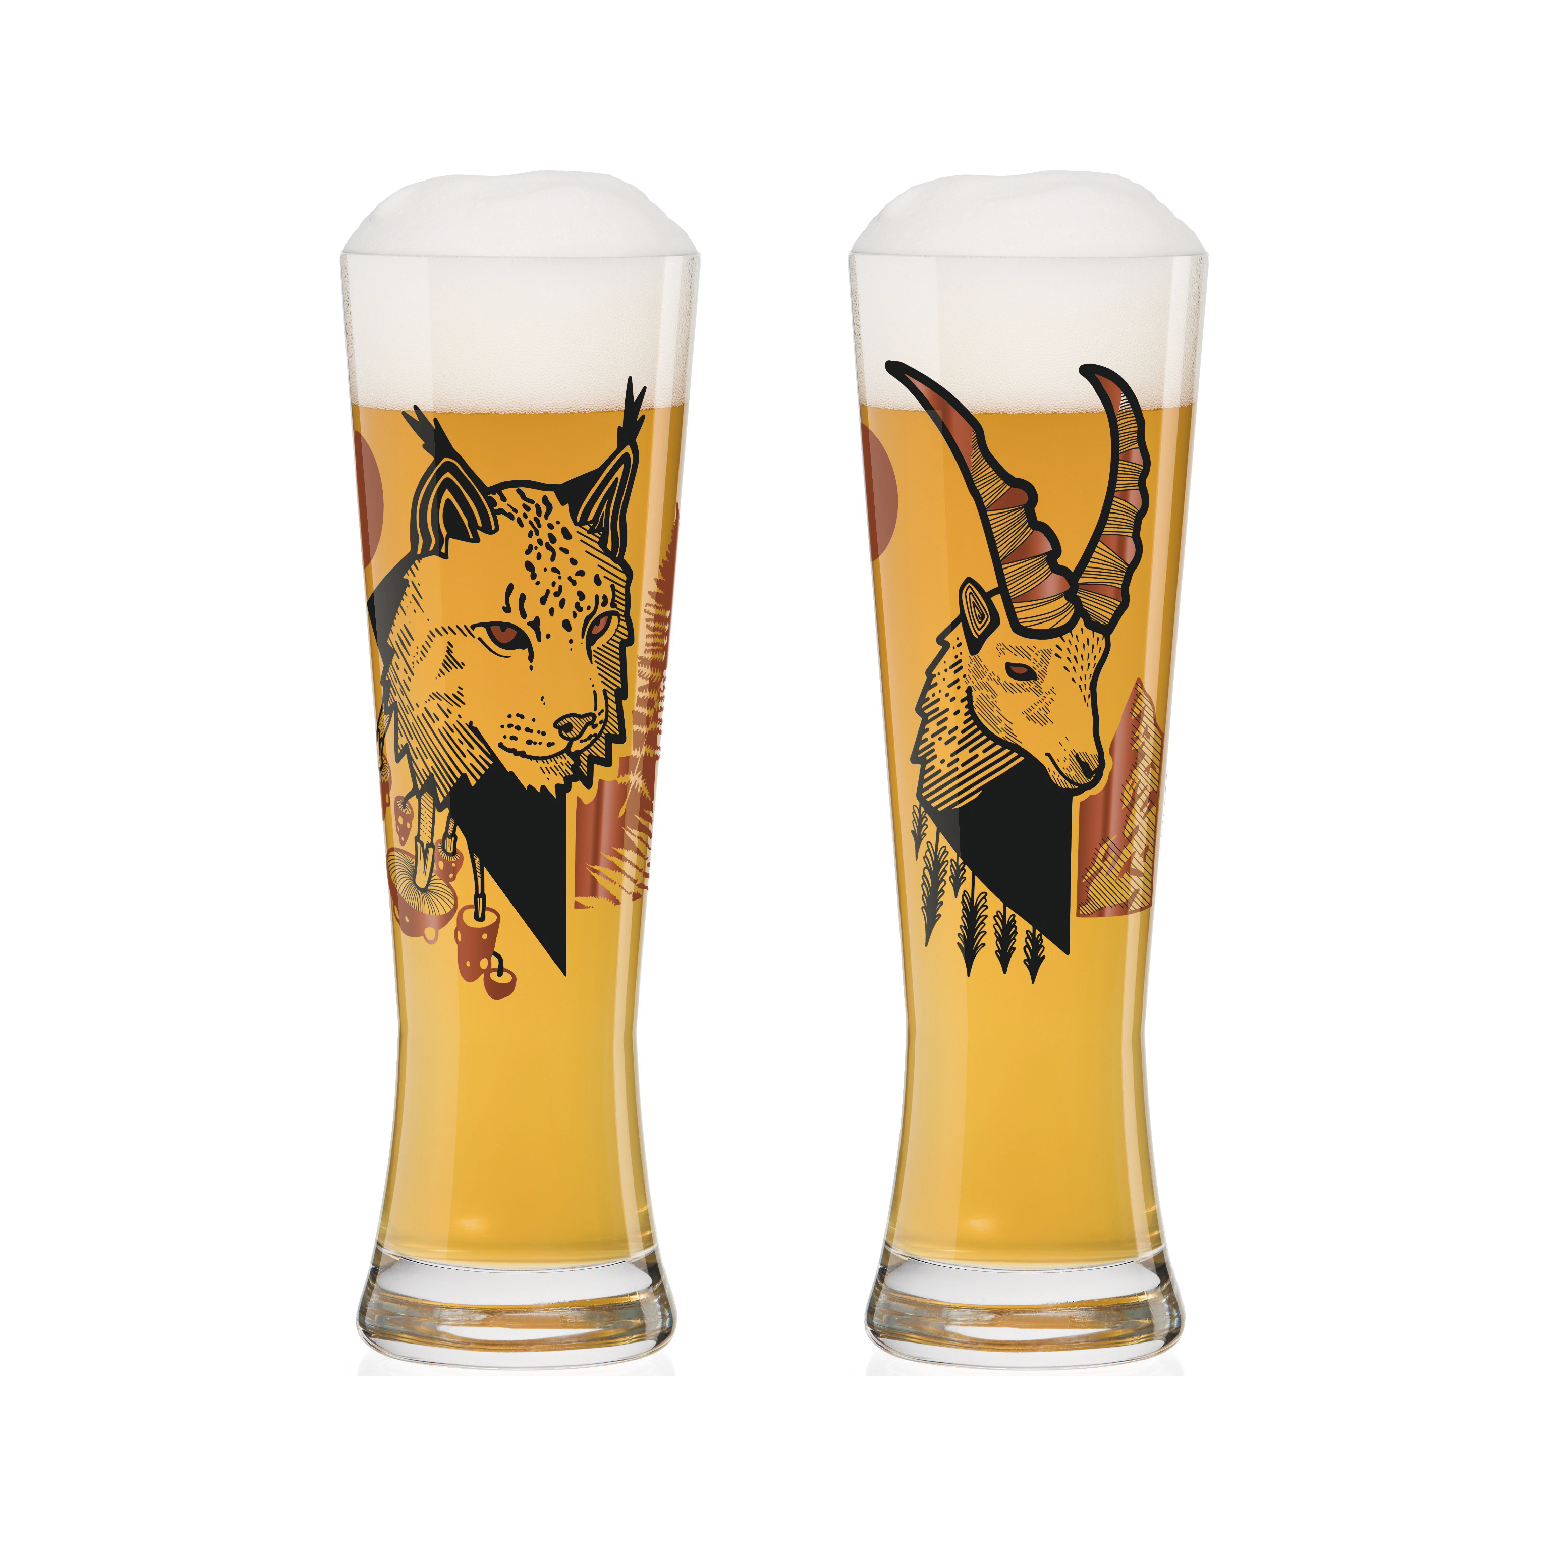 【德國 RITZENHOFF】黑標小麥啤酒對杯-山貓與羚羊-670ML